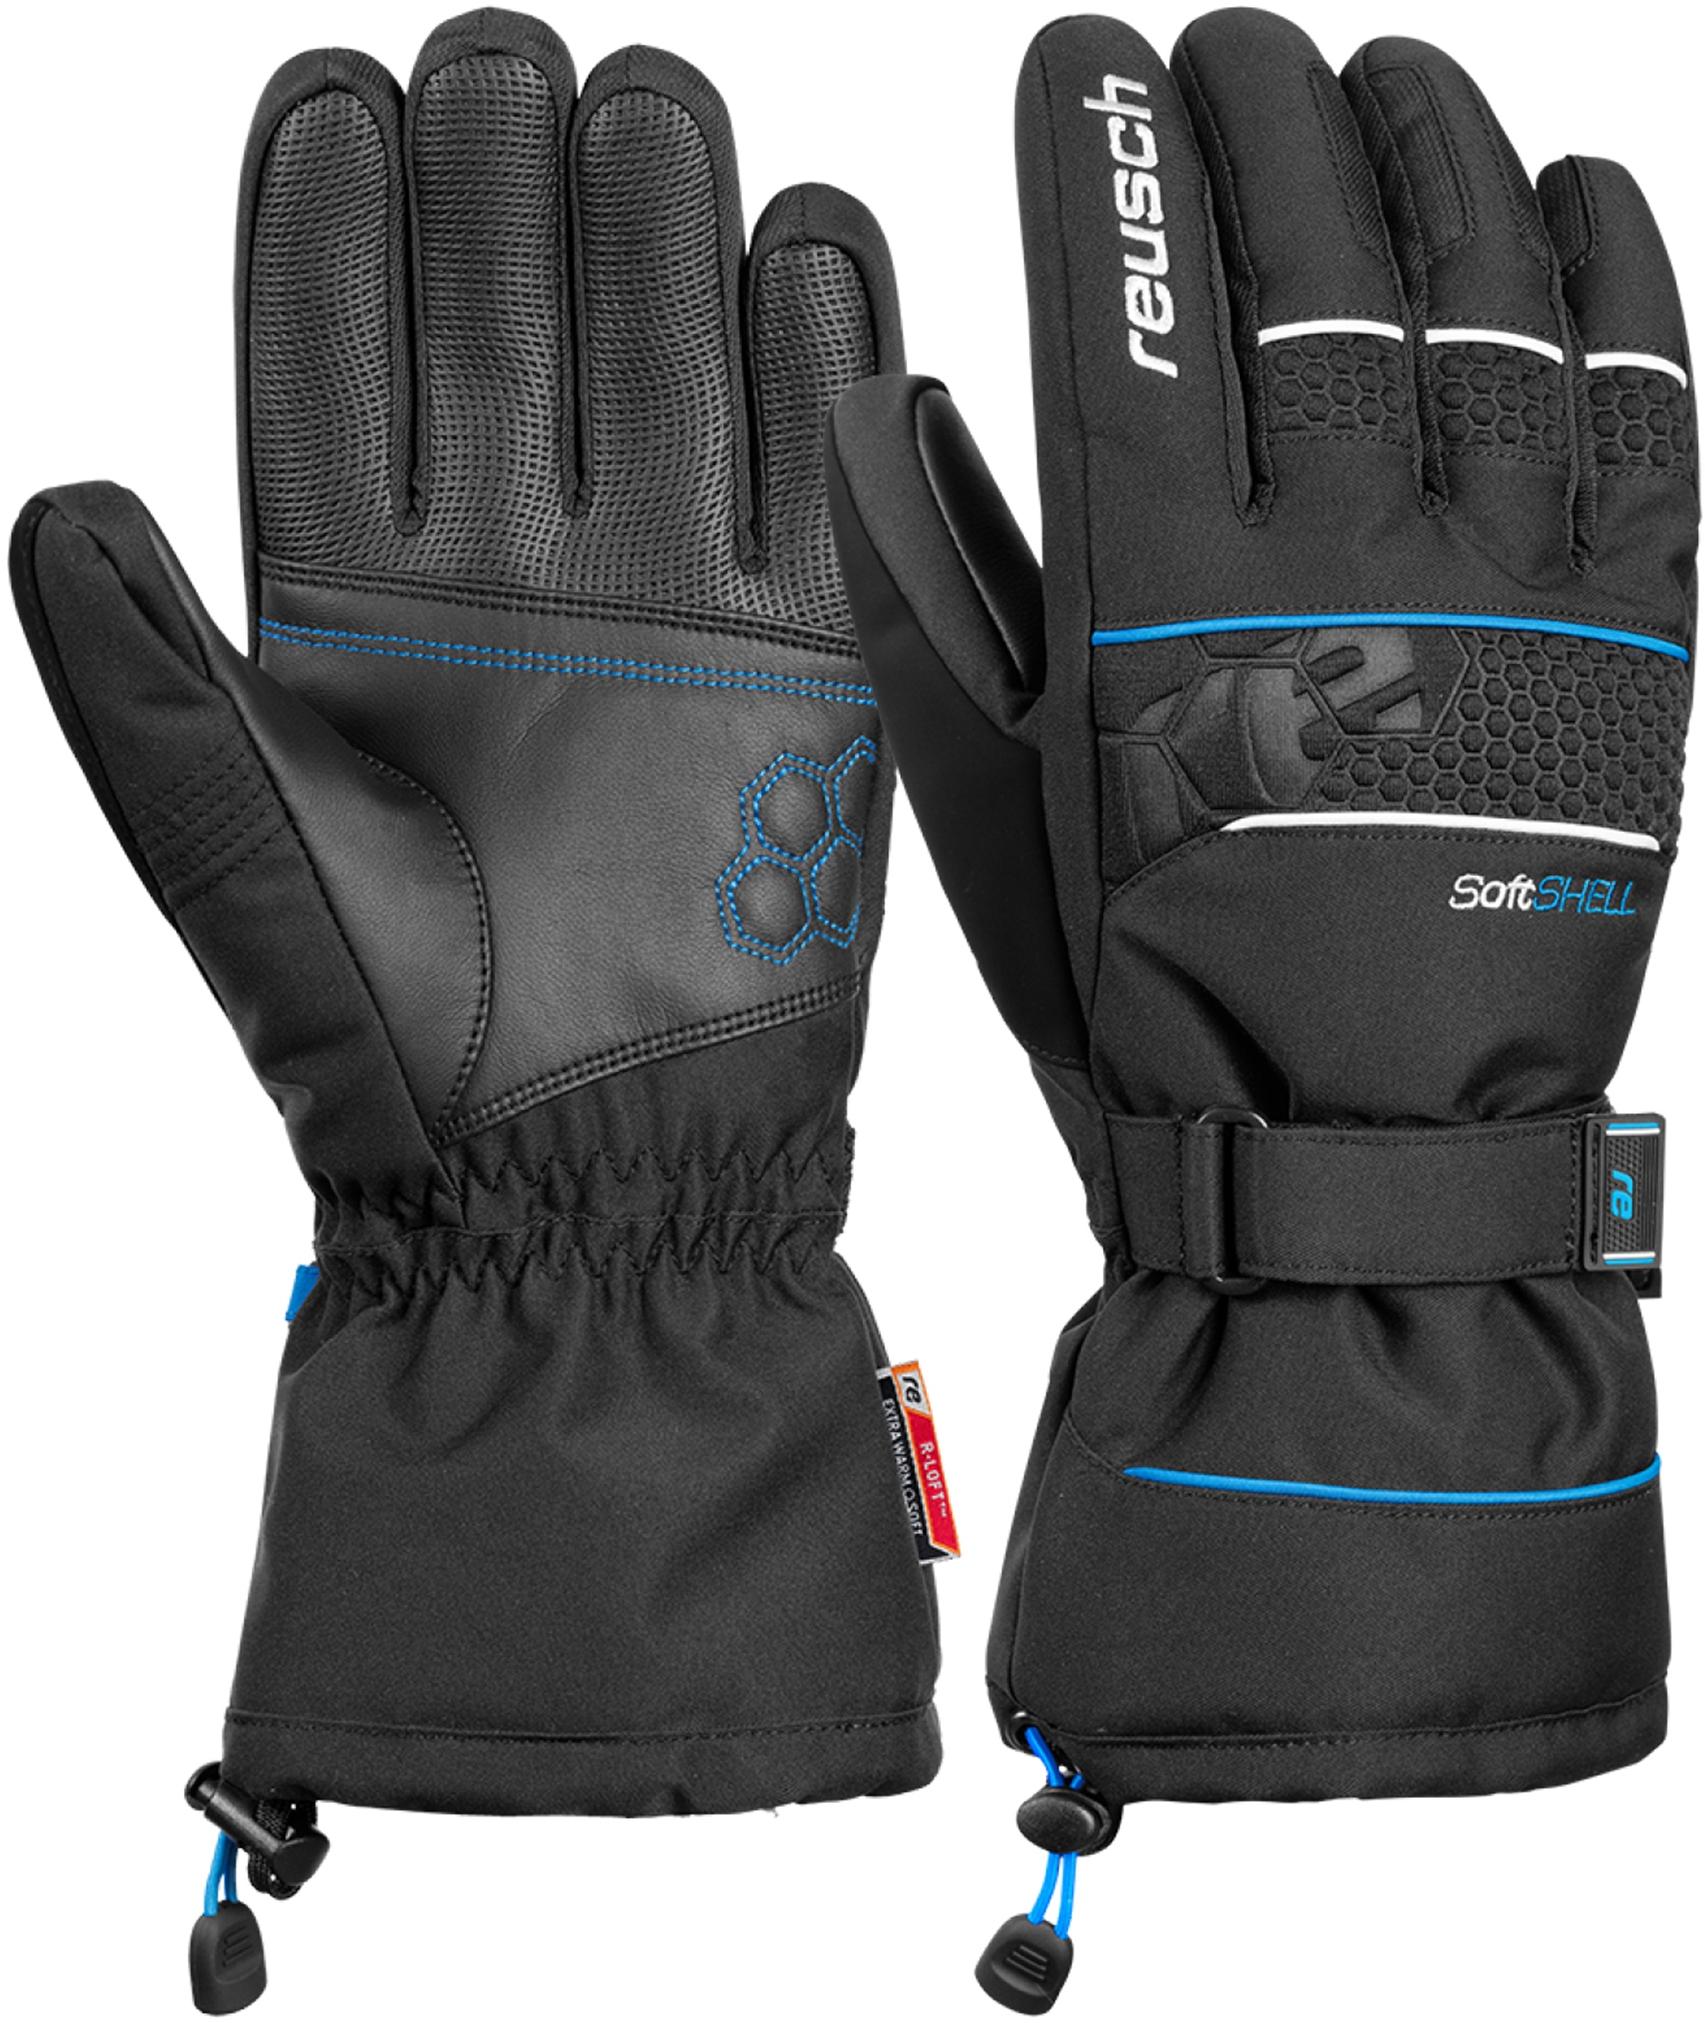 Shop Online / kaufen von SportScheck R-TEX Reusch XT brilliant im Connor Skihandschuhe black blue